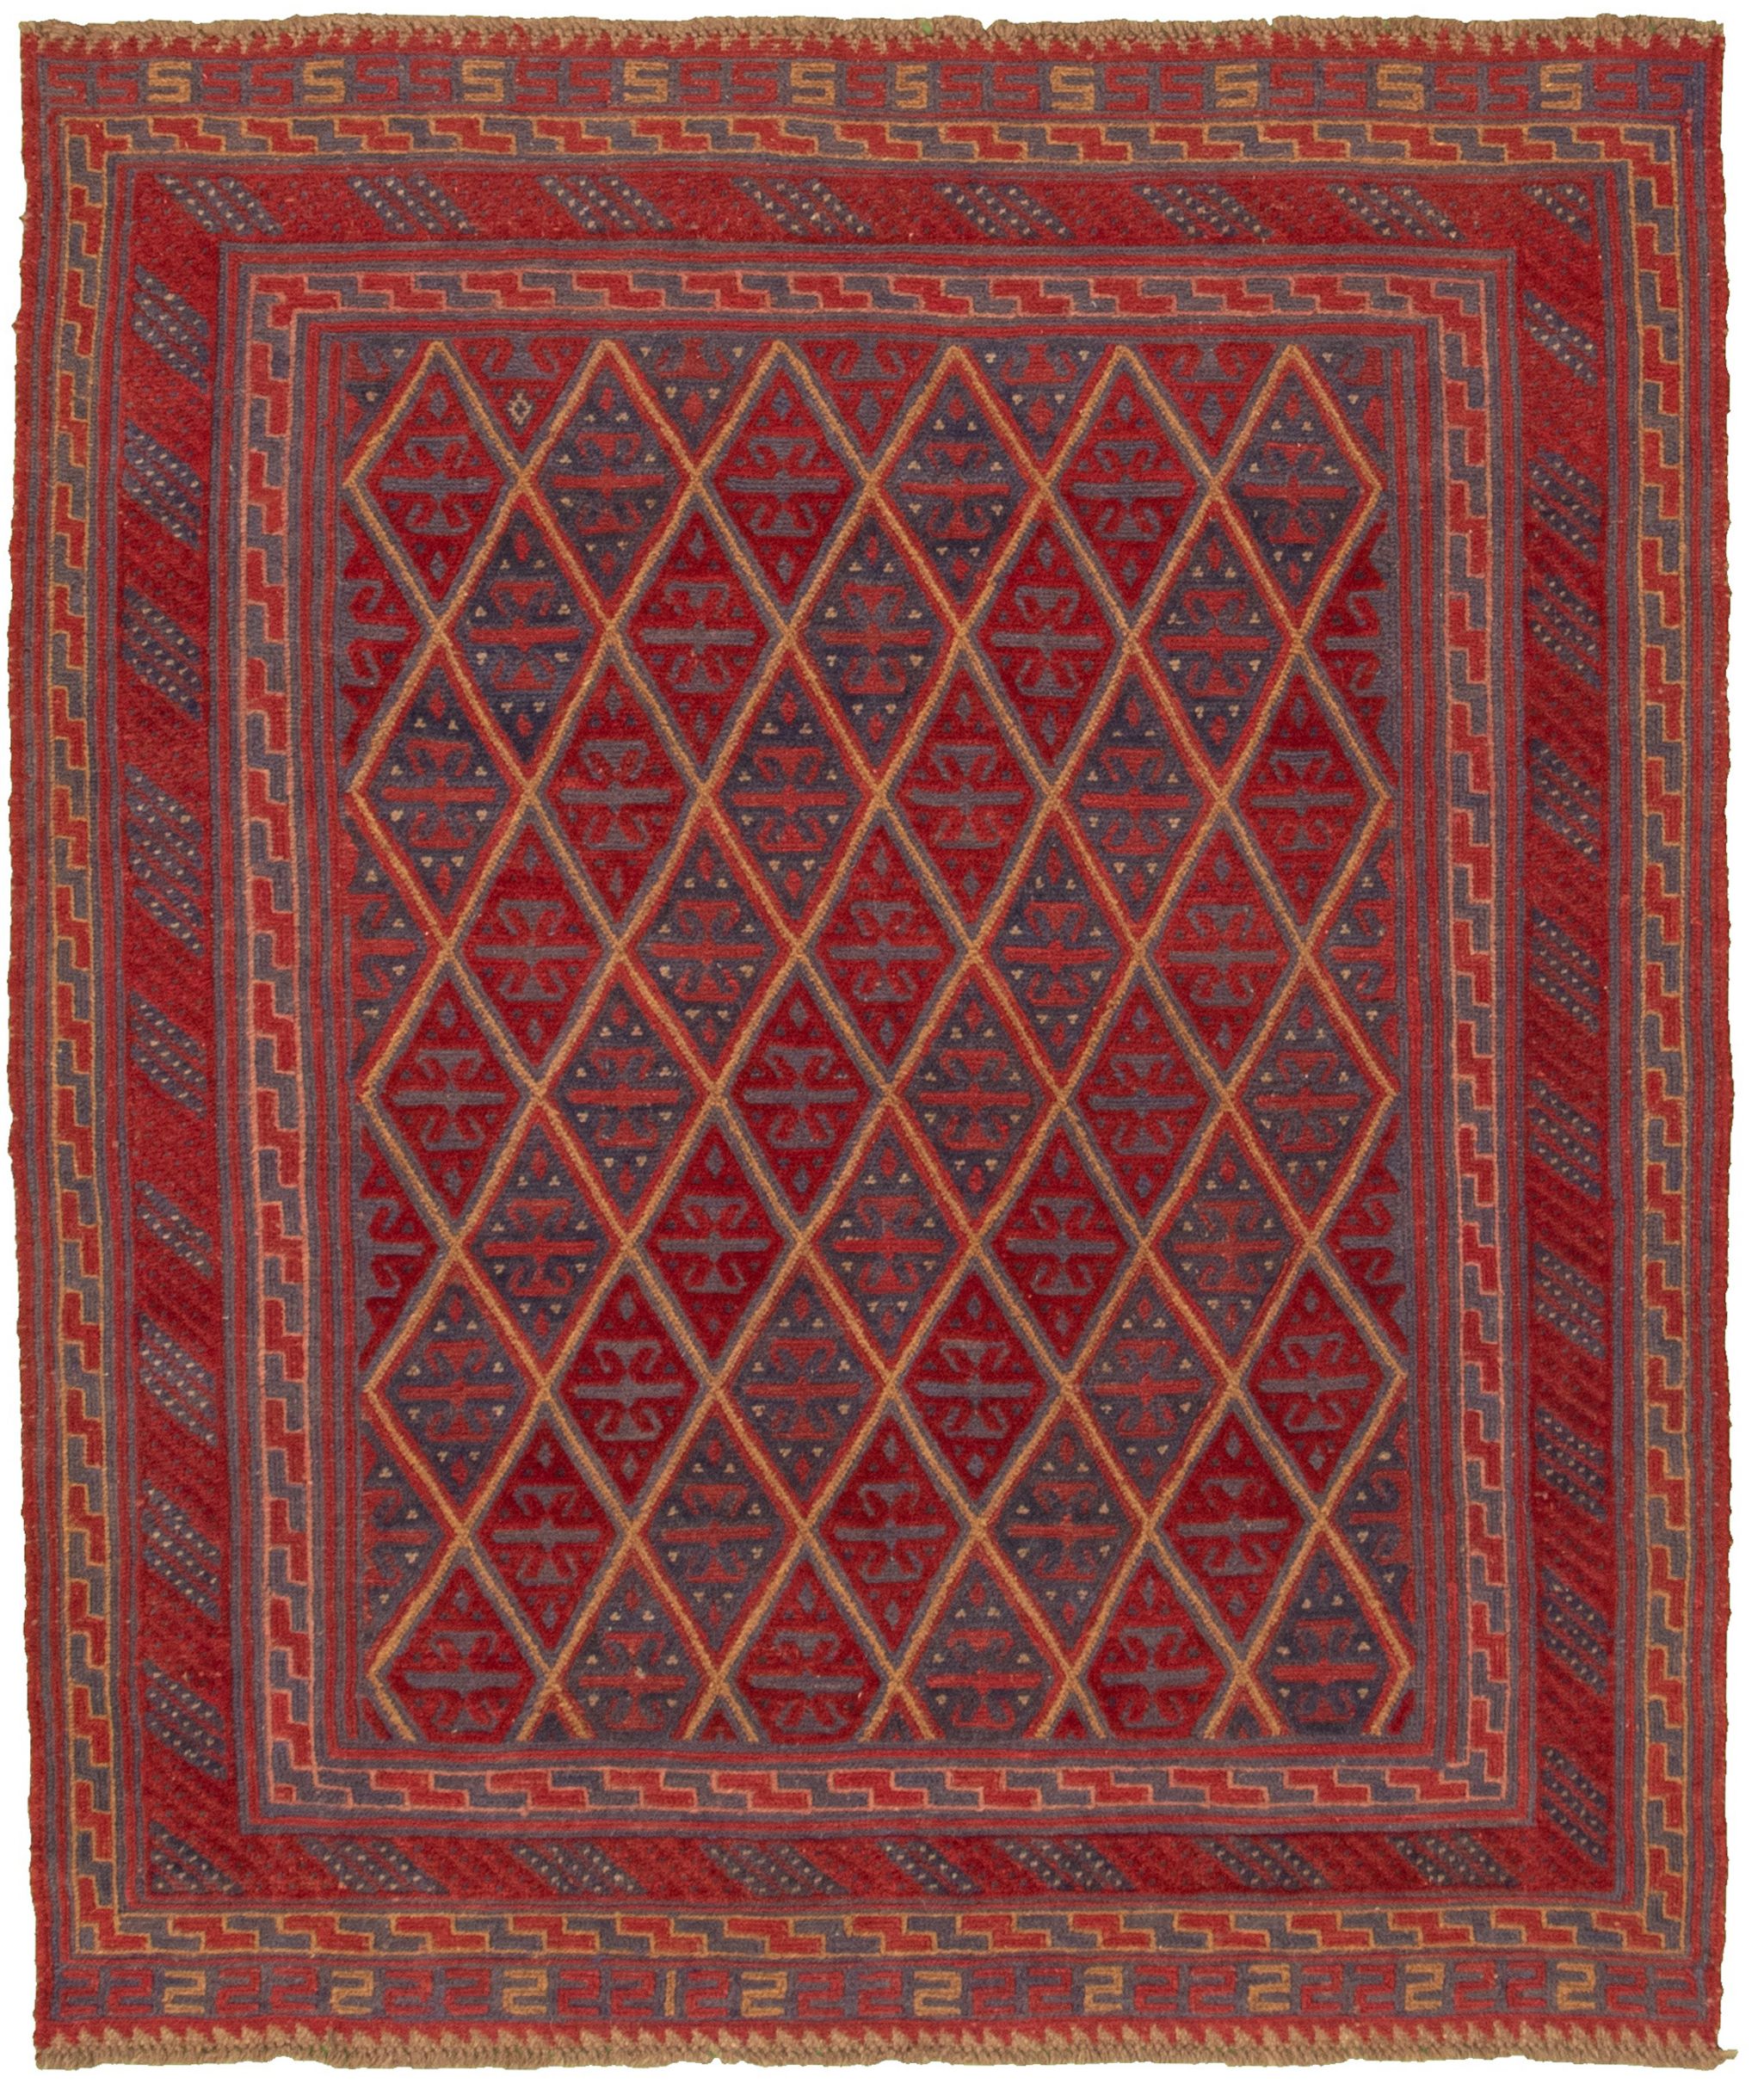 Hand-knotted Tajik Caucasian Dark Red Wool Rug 5'1" x 6'0" Size: 5'1" x 6'0"  